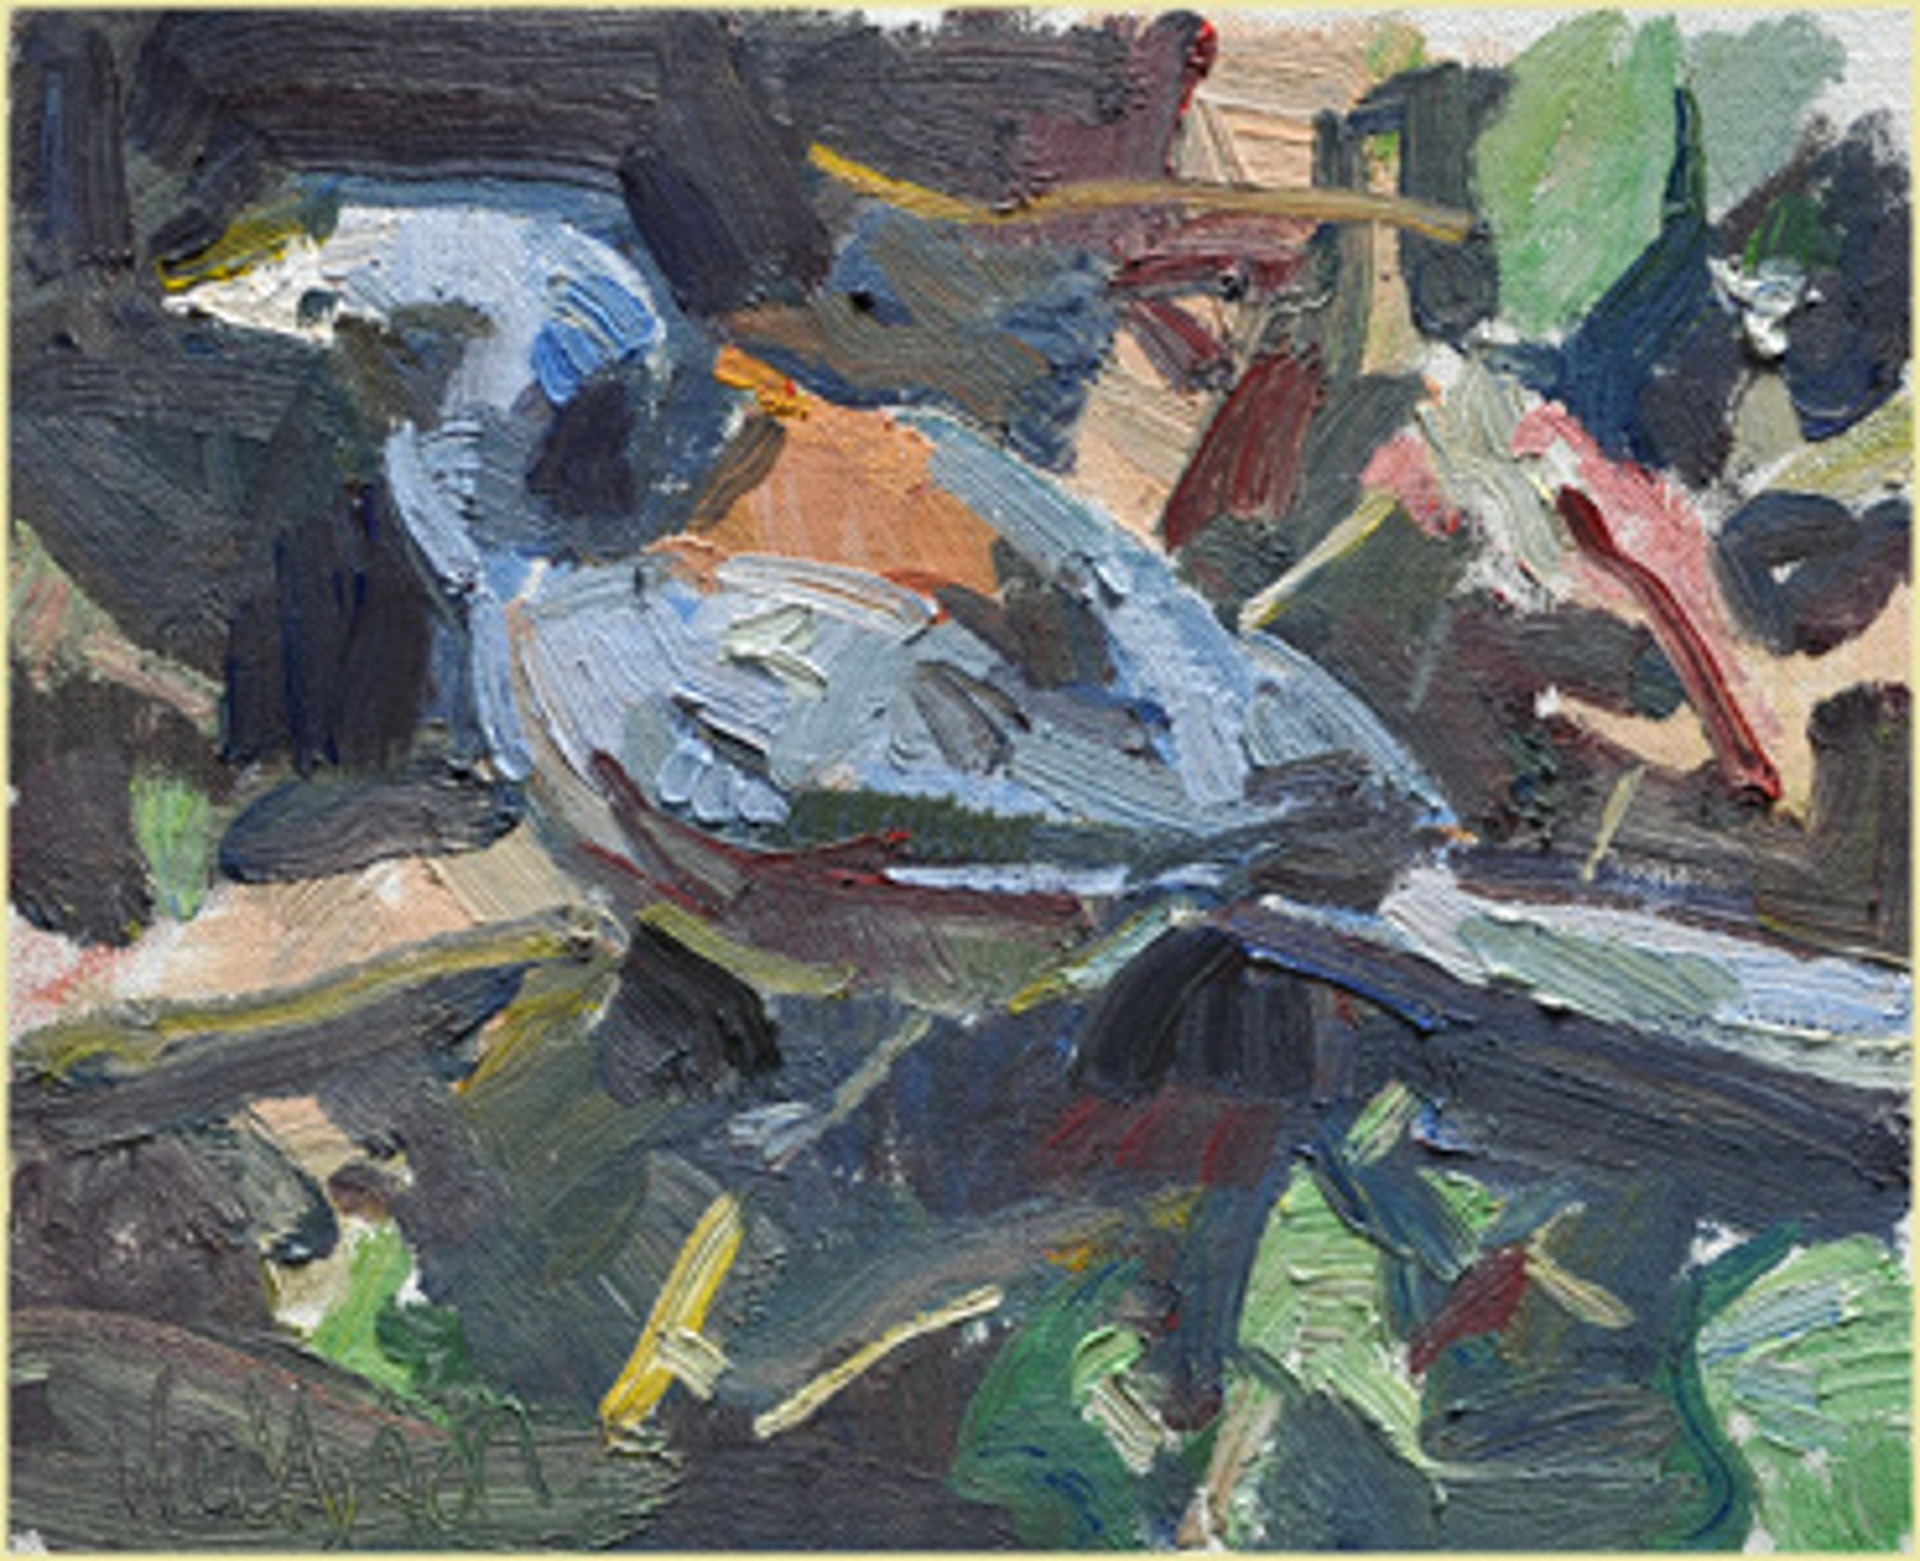 Birdy by Kevin Weckbach